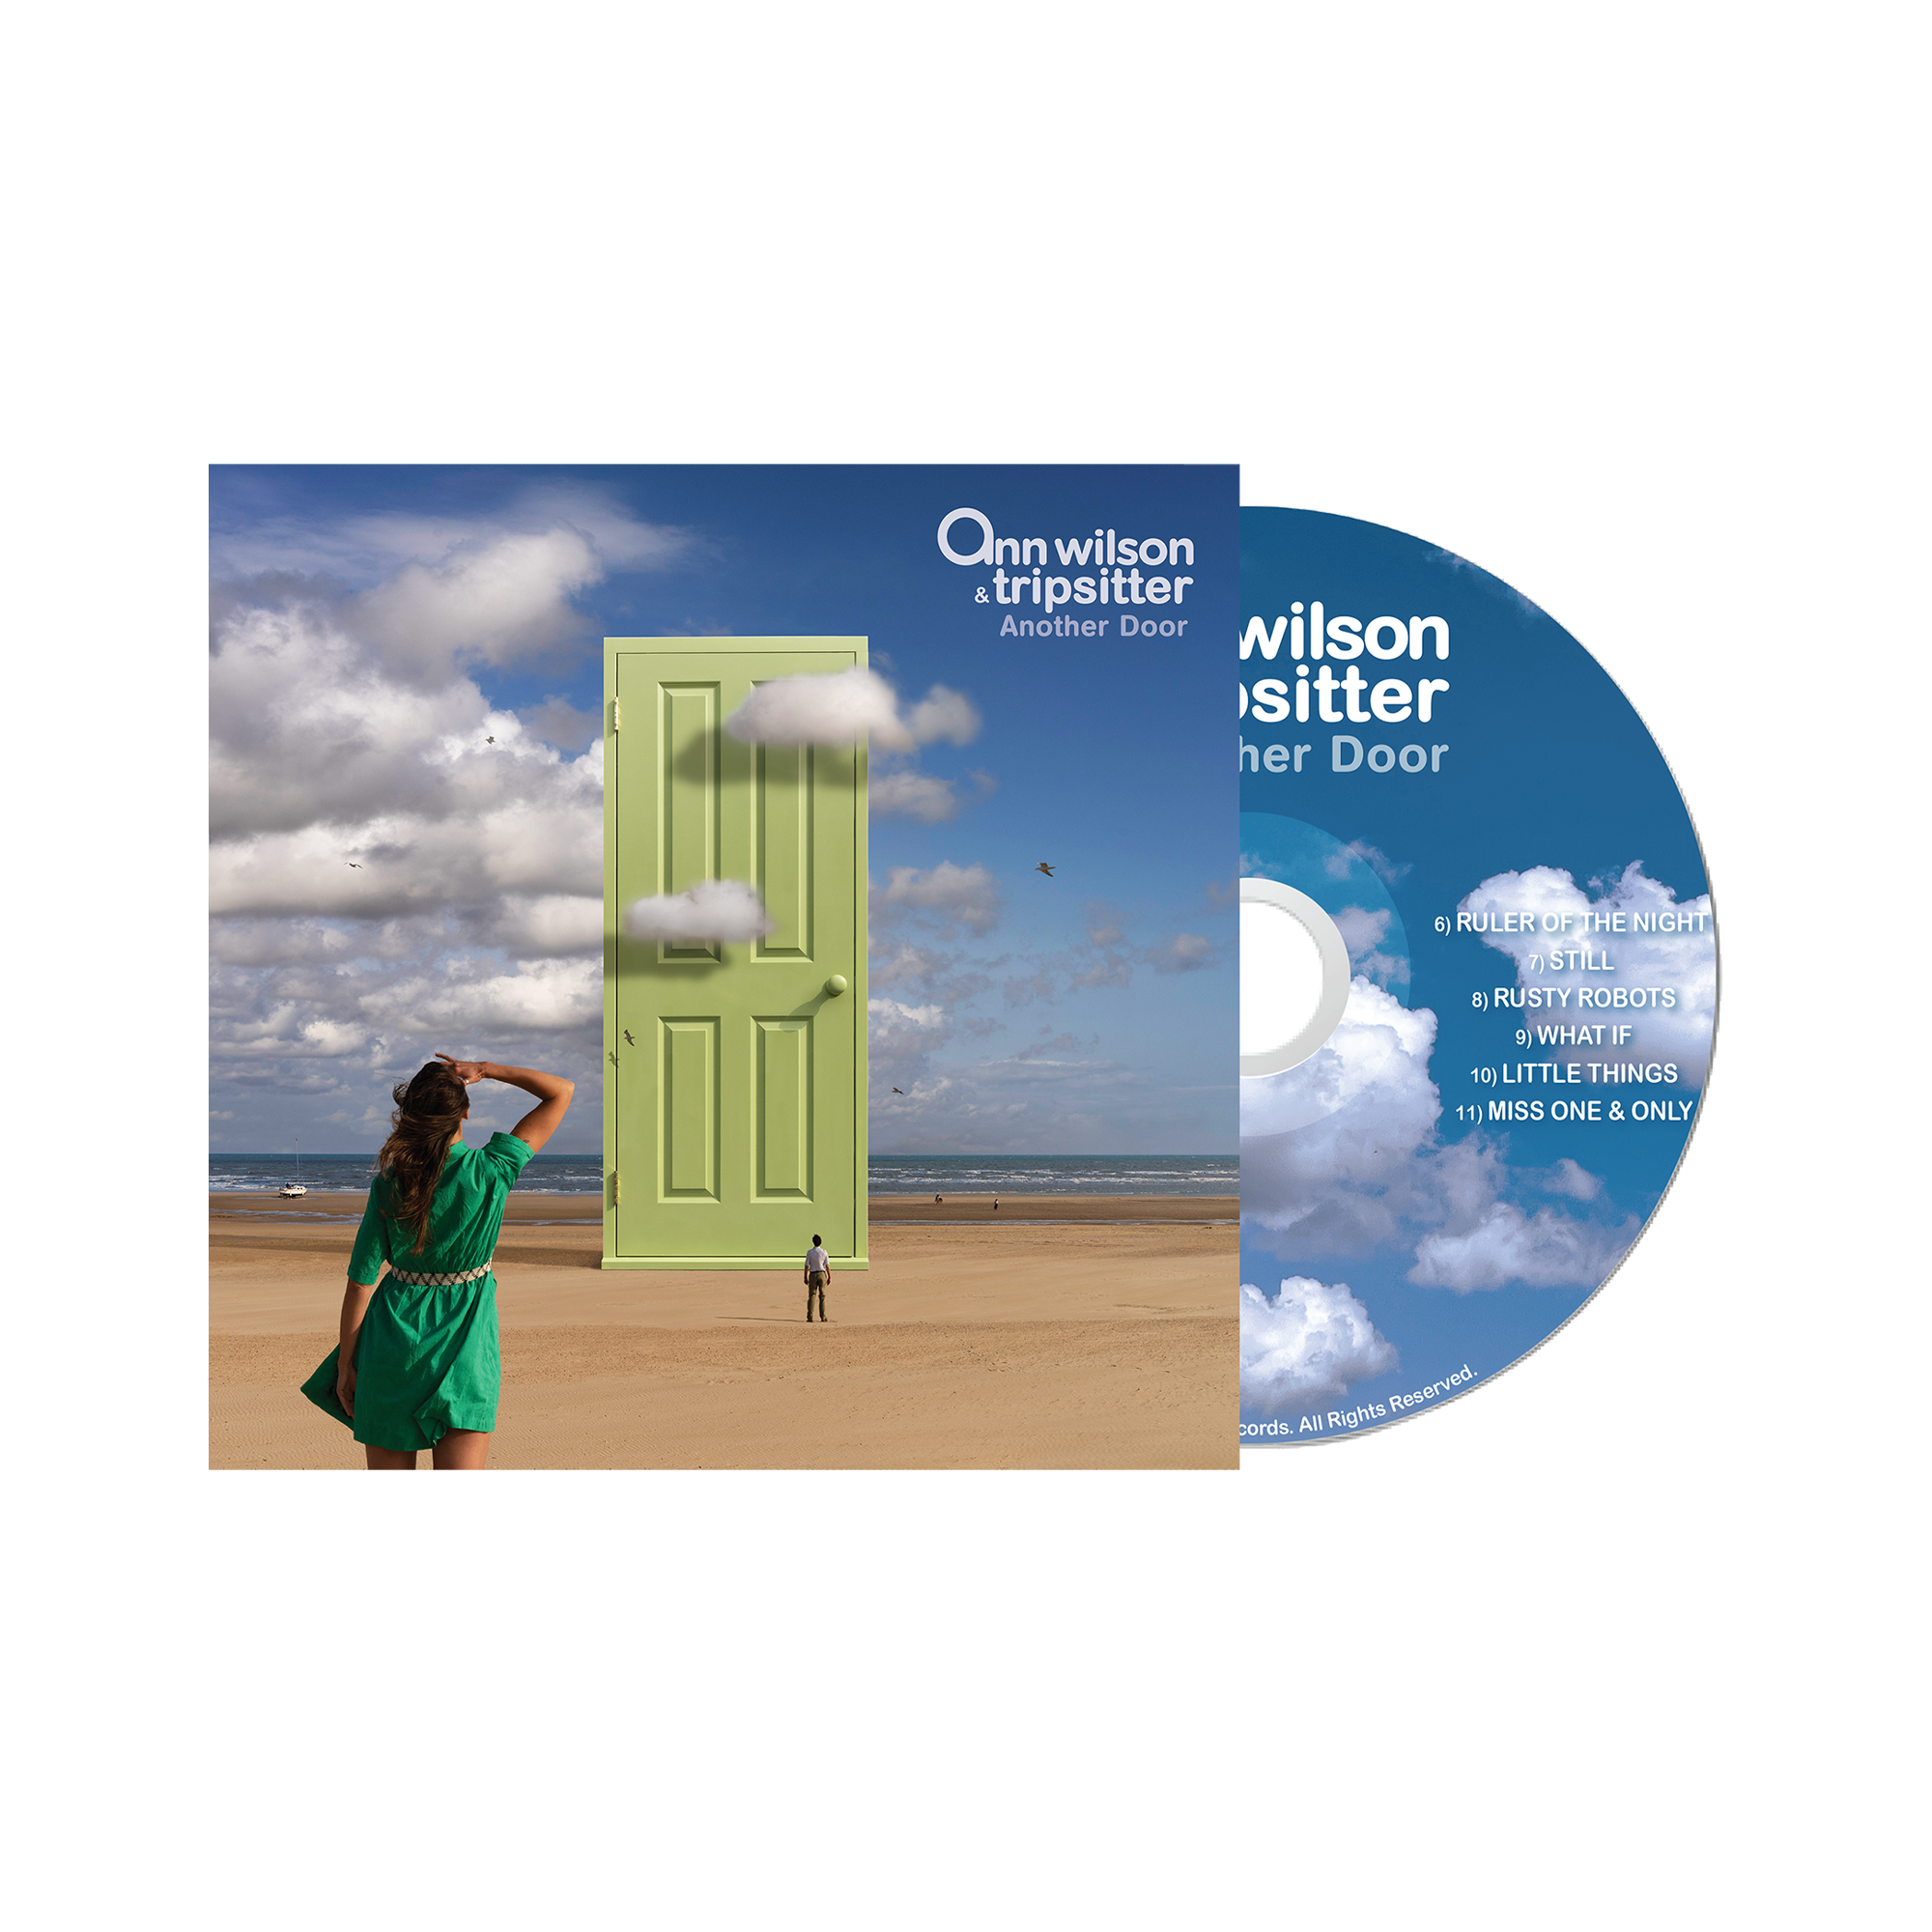 Ann Wilson & Tripsitter - Another Door CD (Pre-Order)